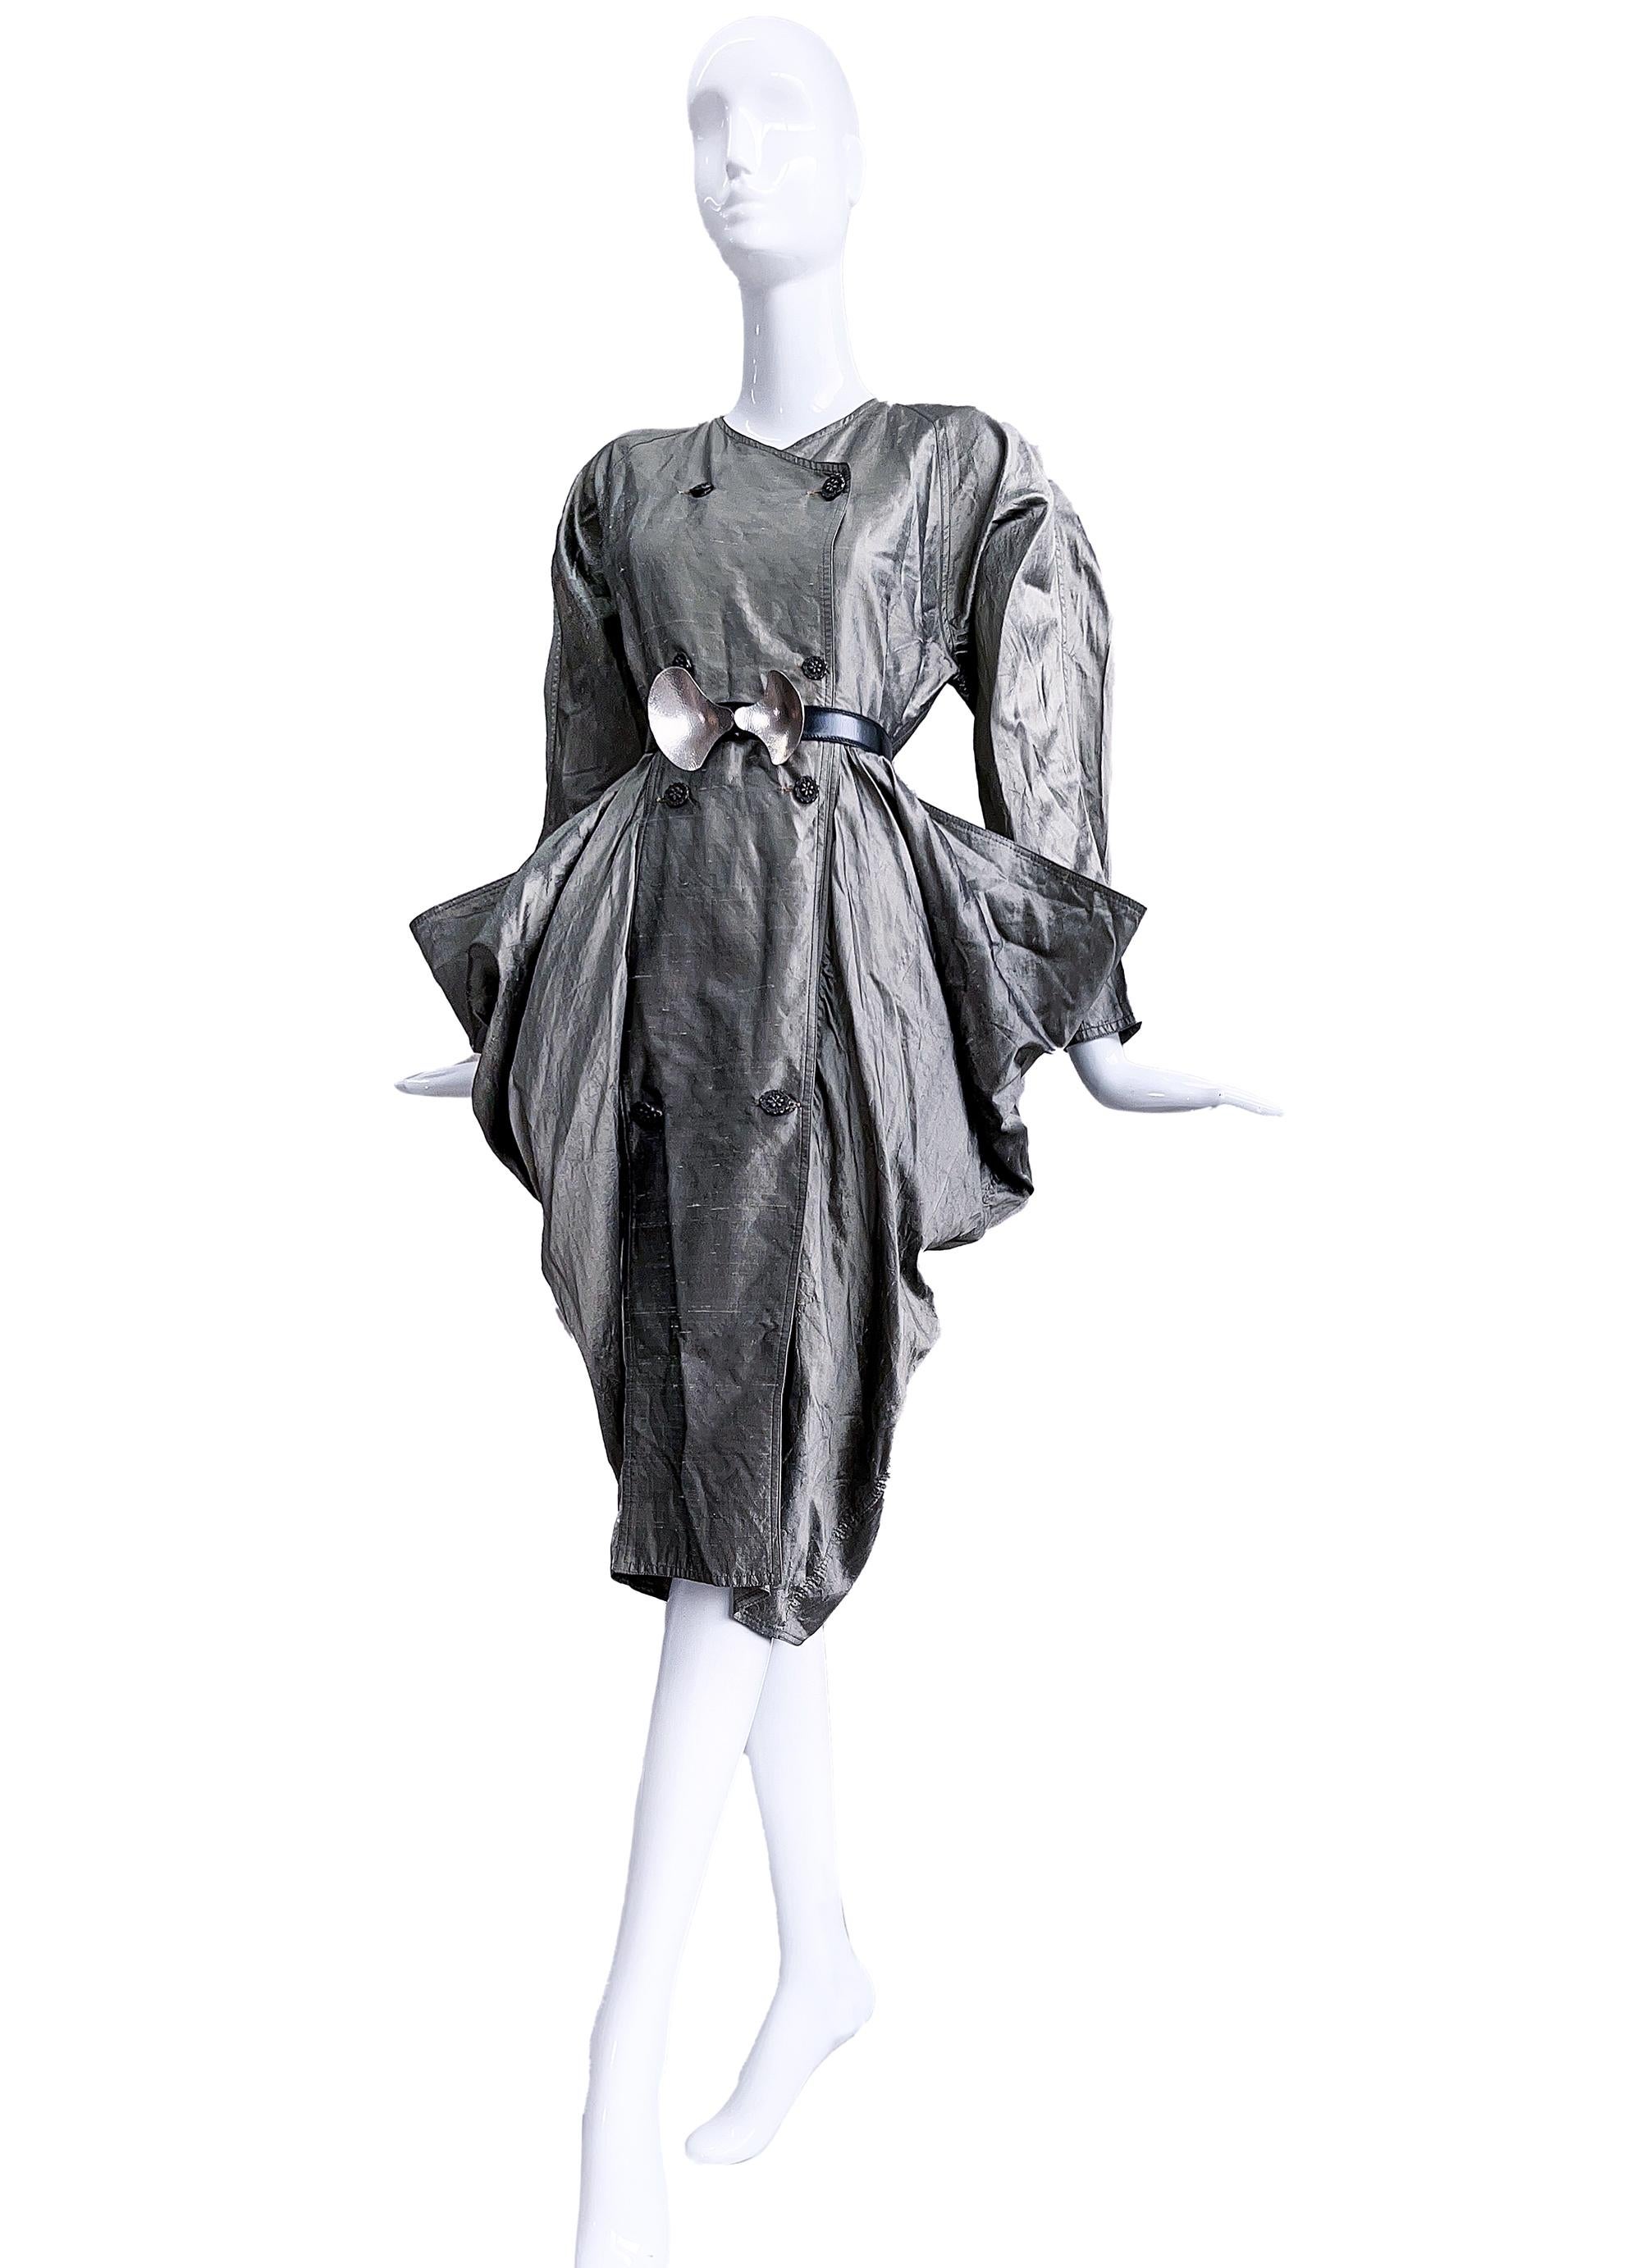 
Atemberaubendes Kleid aus Rohseide mit der unglaublichsten skulpturalen Form!
Einzigartiges Vintage Avant Garde Kleid aus luxuriöser silberner Rohseide. Die skulpturale Passform und die außergewöhnliche Form sind atemberaubend. Schönes